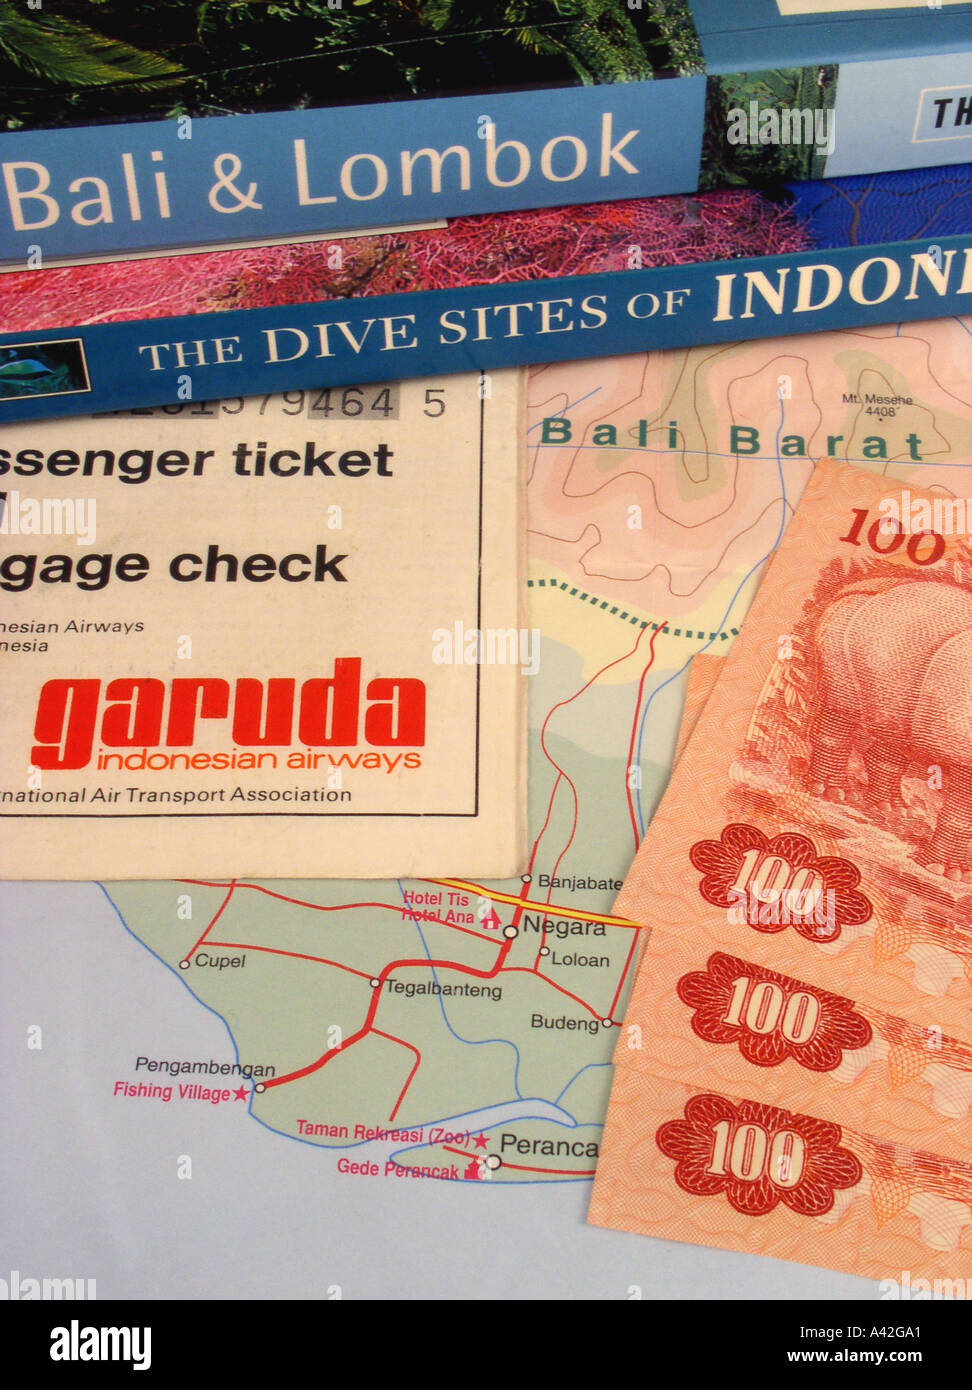 Bali Reiseführer Indonesien Tauchguide Garuda Air Ticket indonesische Rupiah Währung Karte von Bali Stockfoto